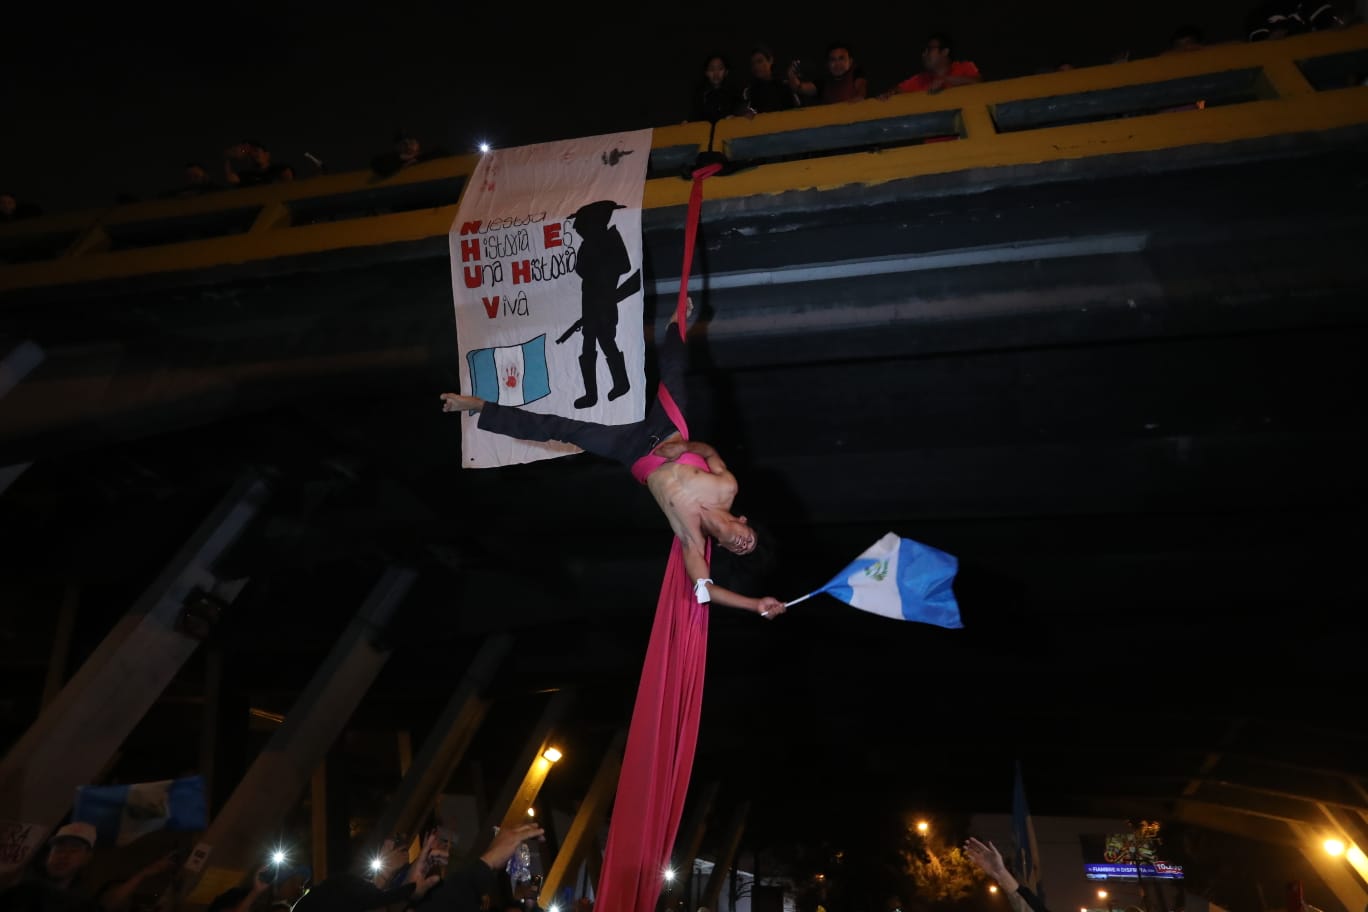 Algunas personas llevaron a cabo representaciones artísticas en algunos puntos bloqueados en la Ciudad de Guatemala. Este ocurrió en El Trébol. (Foto Prensa Libre: María Reneé Barrientos).